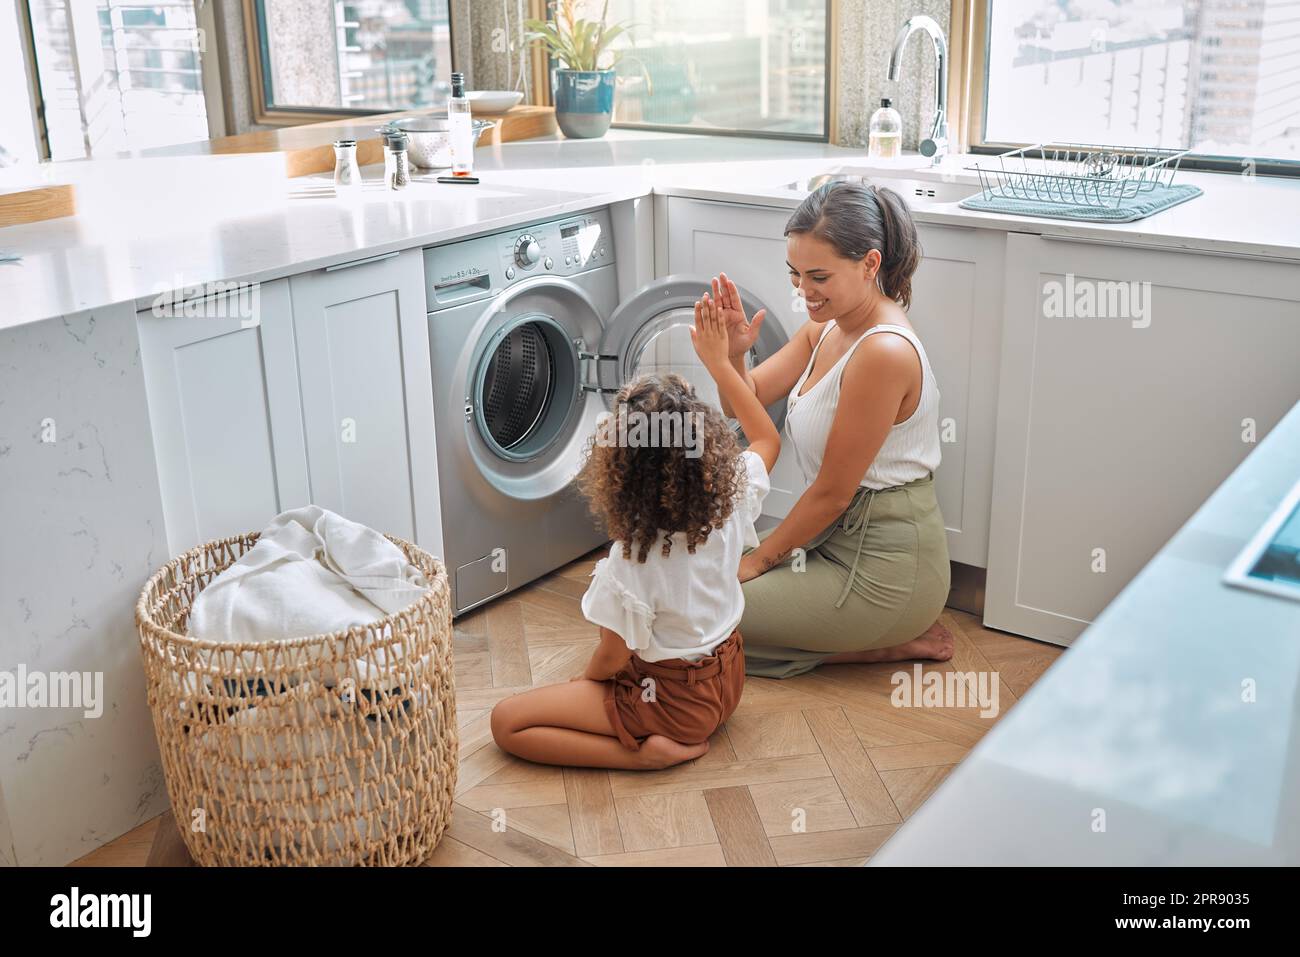 La giovane madre ispanica e sua figlia si danno cinque dollari dopo aver fatto il bucato a casa. Adorabile bambina che aiuta sua madre con le faccende domestiche Foto Stock